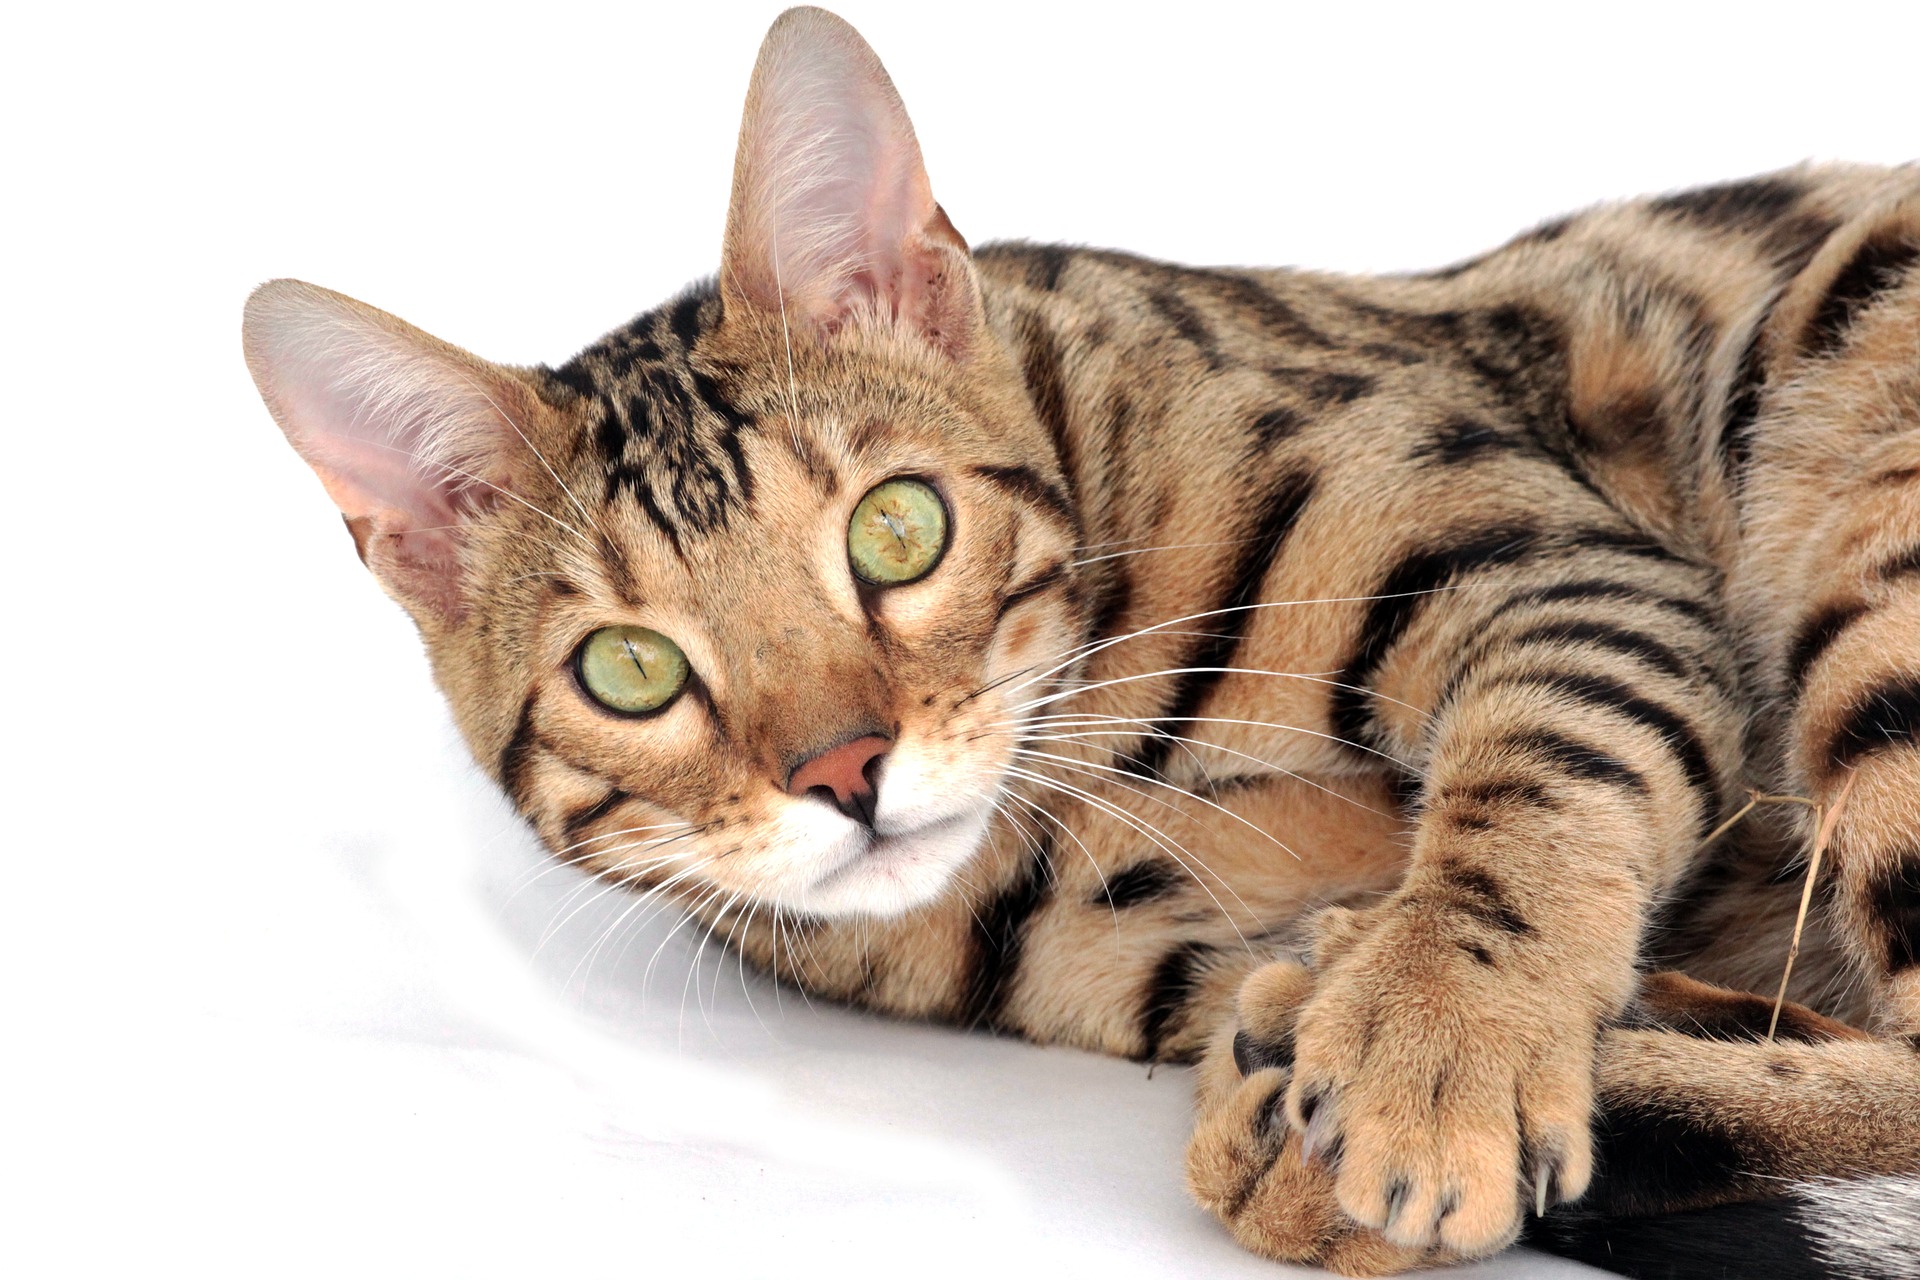 Essendo una razza di gatto di grandi dimensioni, il Bengala ha bisogno di un ampio tiragraffi e di un'alimentazione adeguata, ricca di proteine animali.